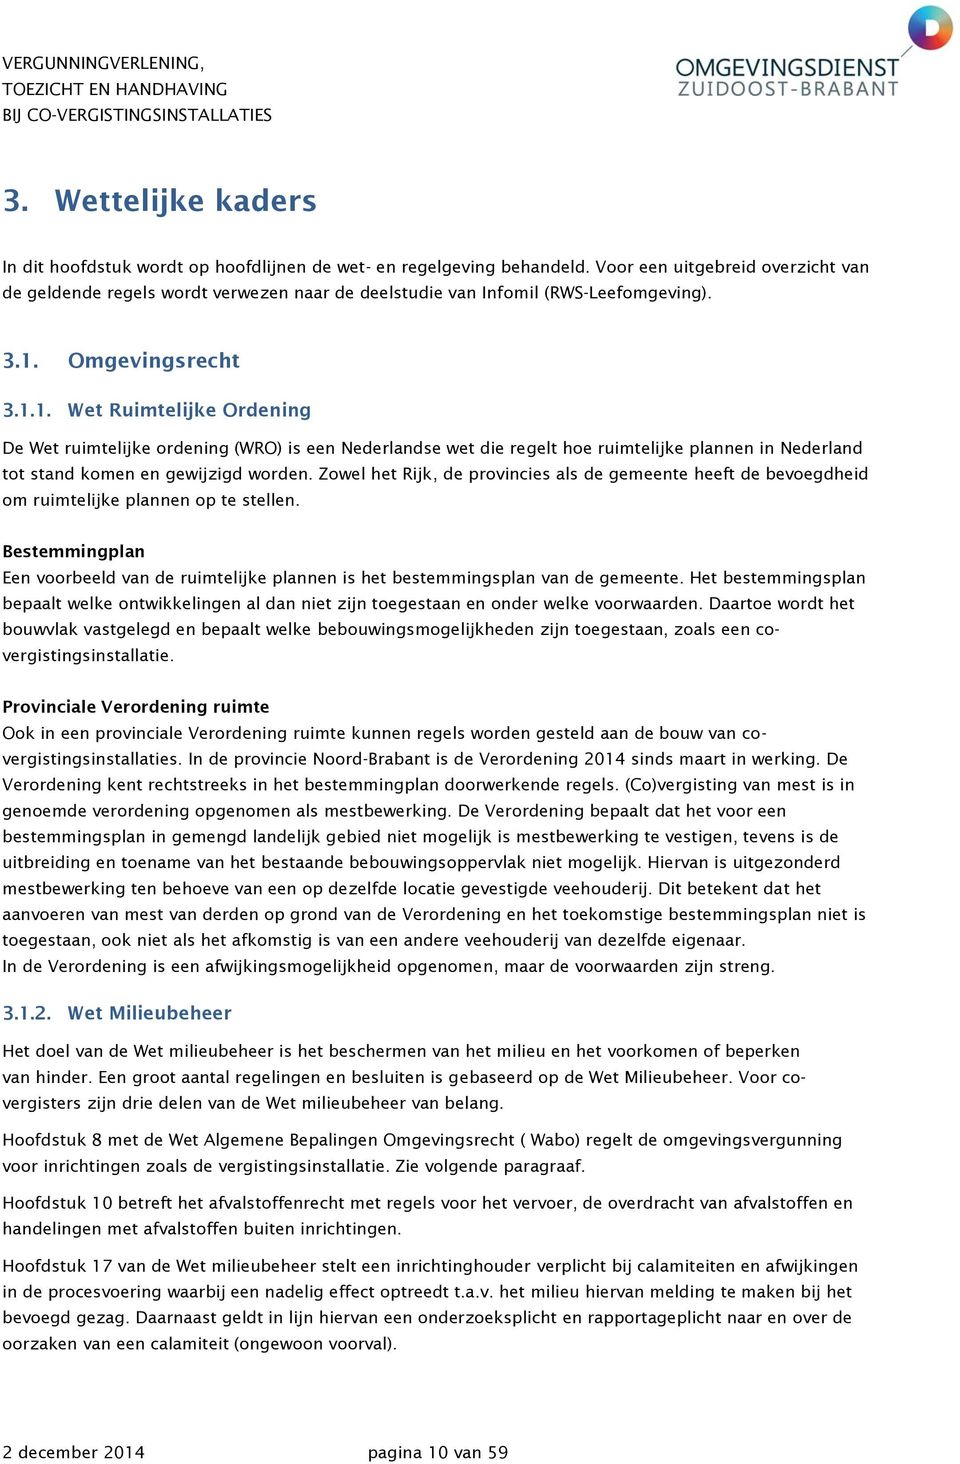 Omgevingsrecht 3.1.1. Wet Ruimtelijke Ordening De Wet ruimtelijke ordening (WRO) is een Nederlandse wet die regelt hoe ruimtelijke plannen in Nederland tot stand komen en gewijzigd worden.